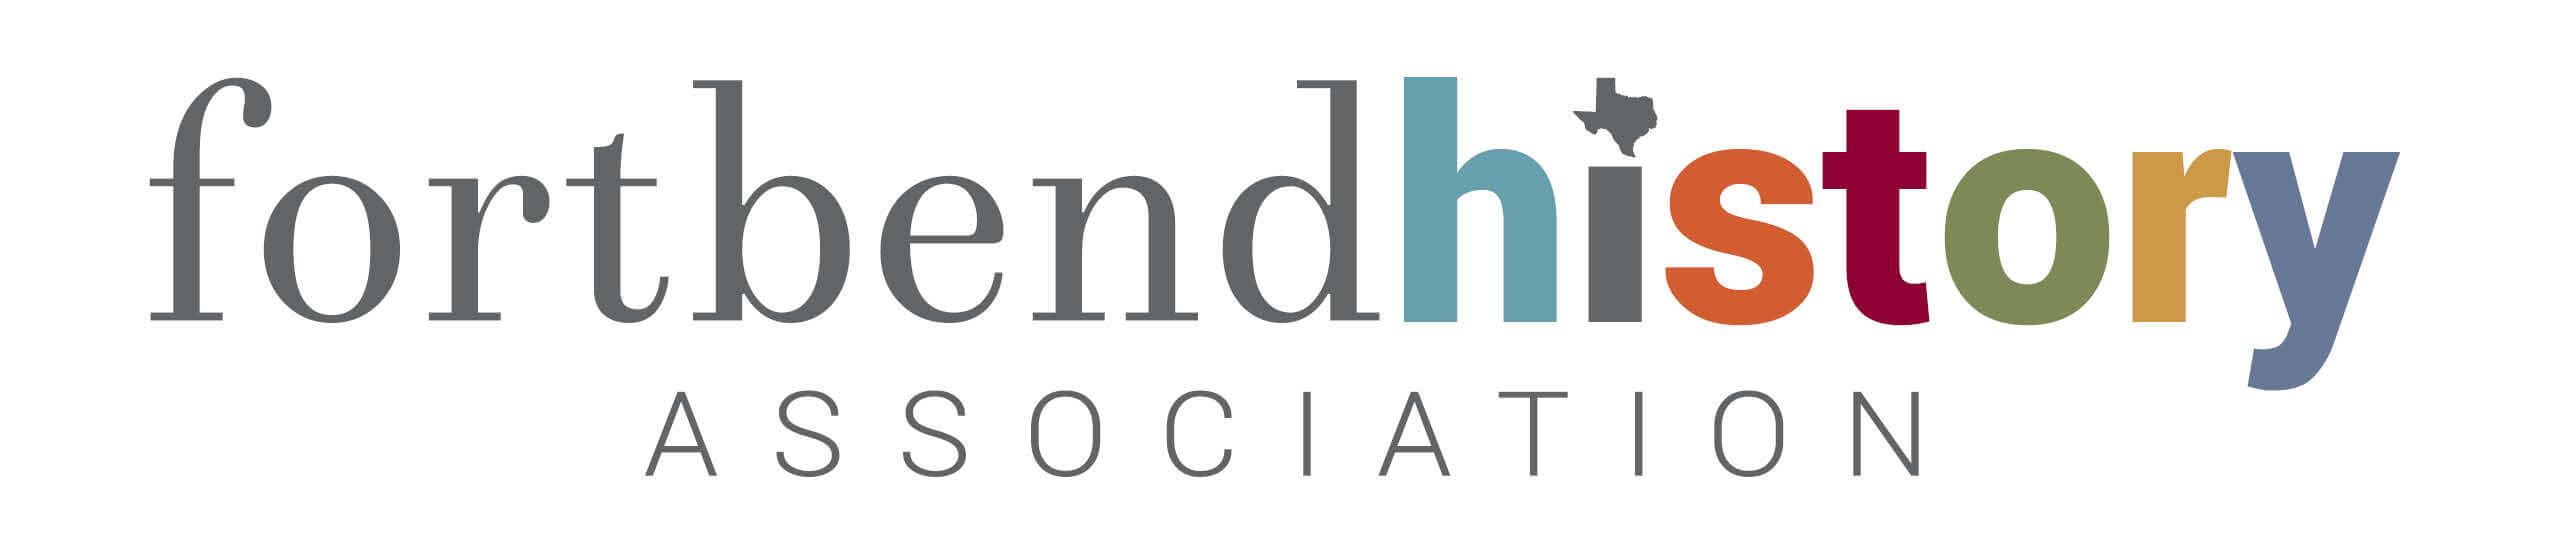 Fort Bend History Association logo